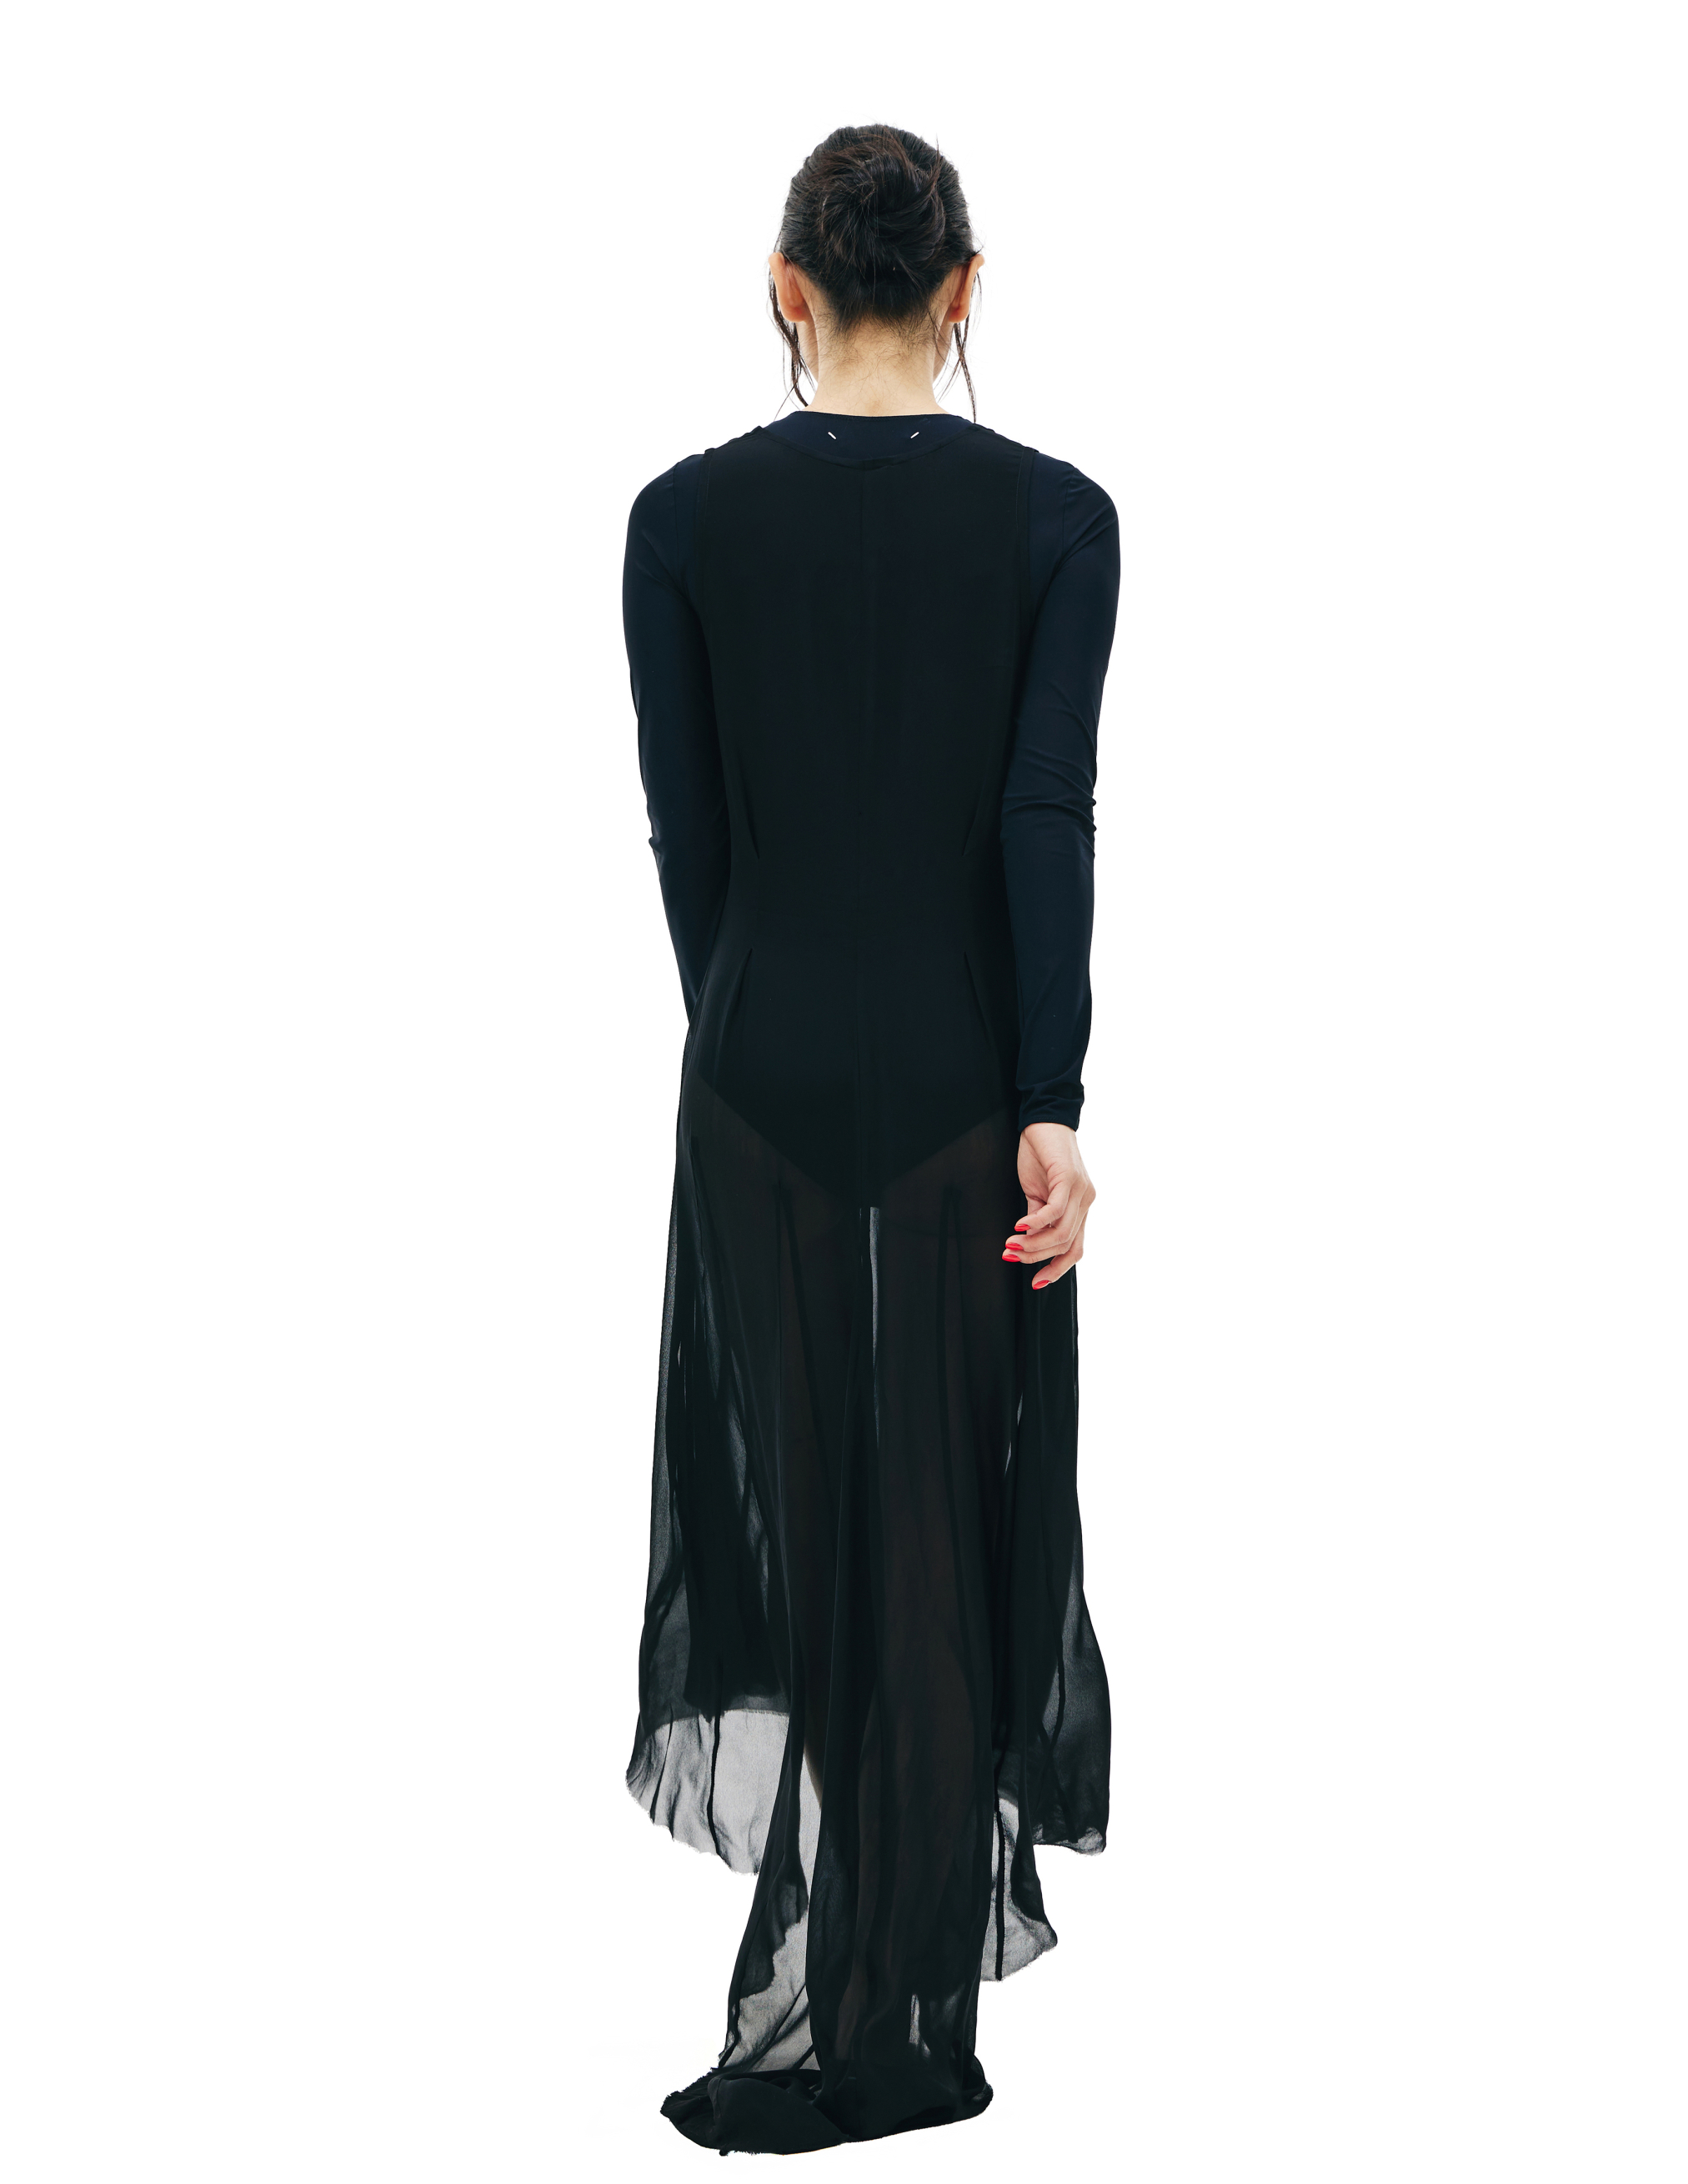 Черное полупрозрачное платье с удлиненной спинкой Ann Demeulemeester 2002-2260-140-099, размер 40;38 - фото 3